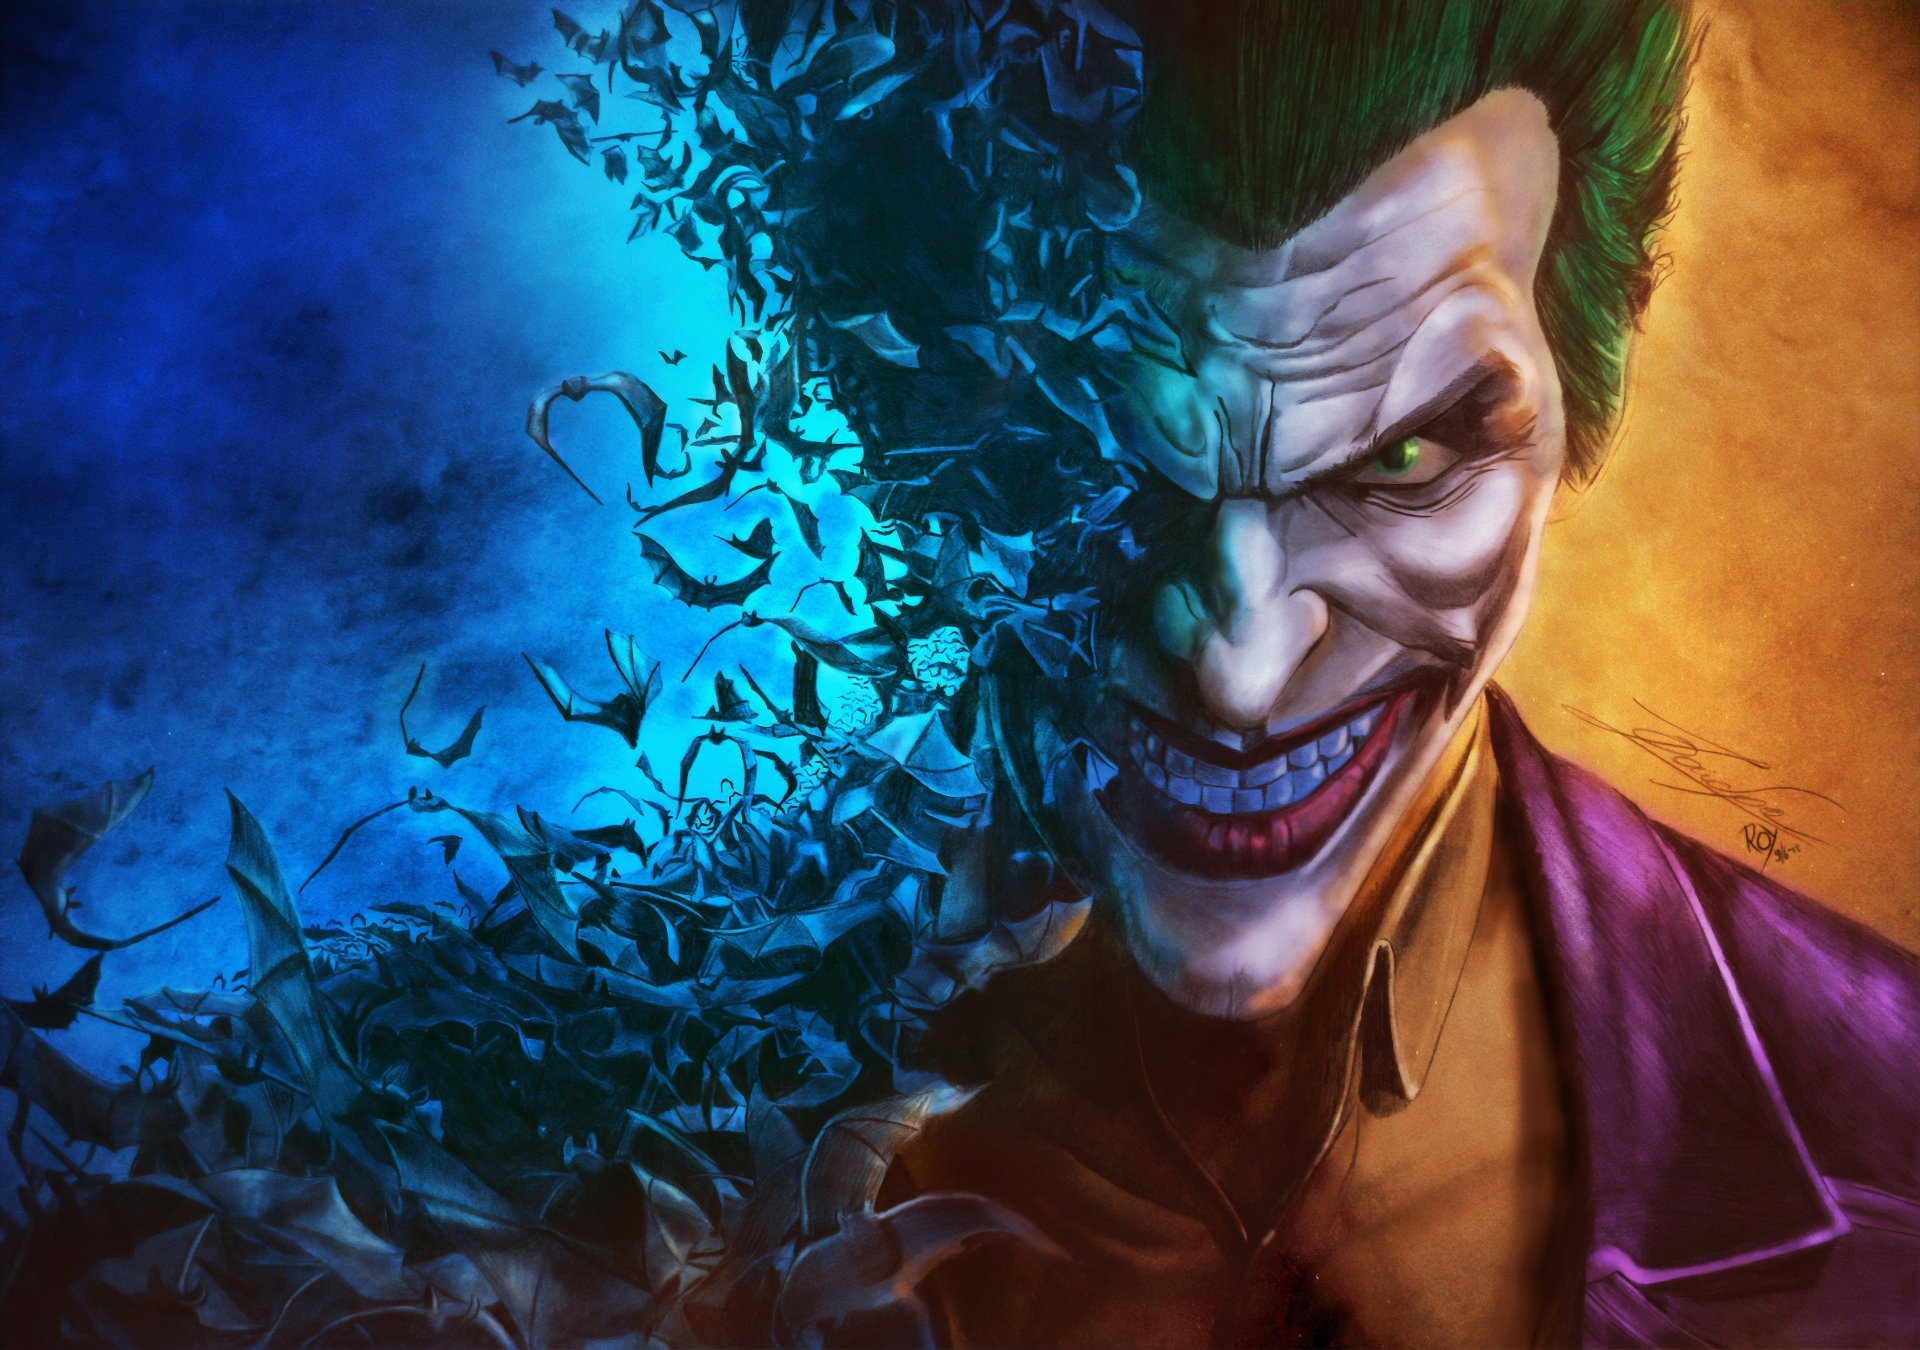 Joker 4k Ultra HD Wallpaper | Background Image | 3840x2700 | ID:1041483